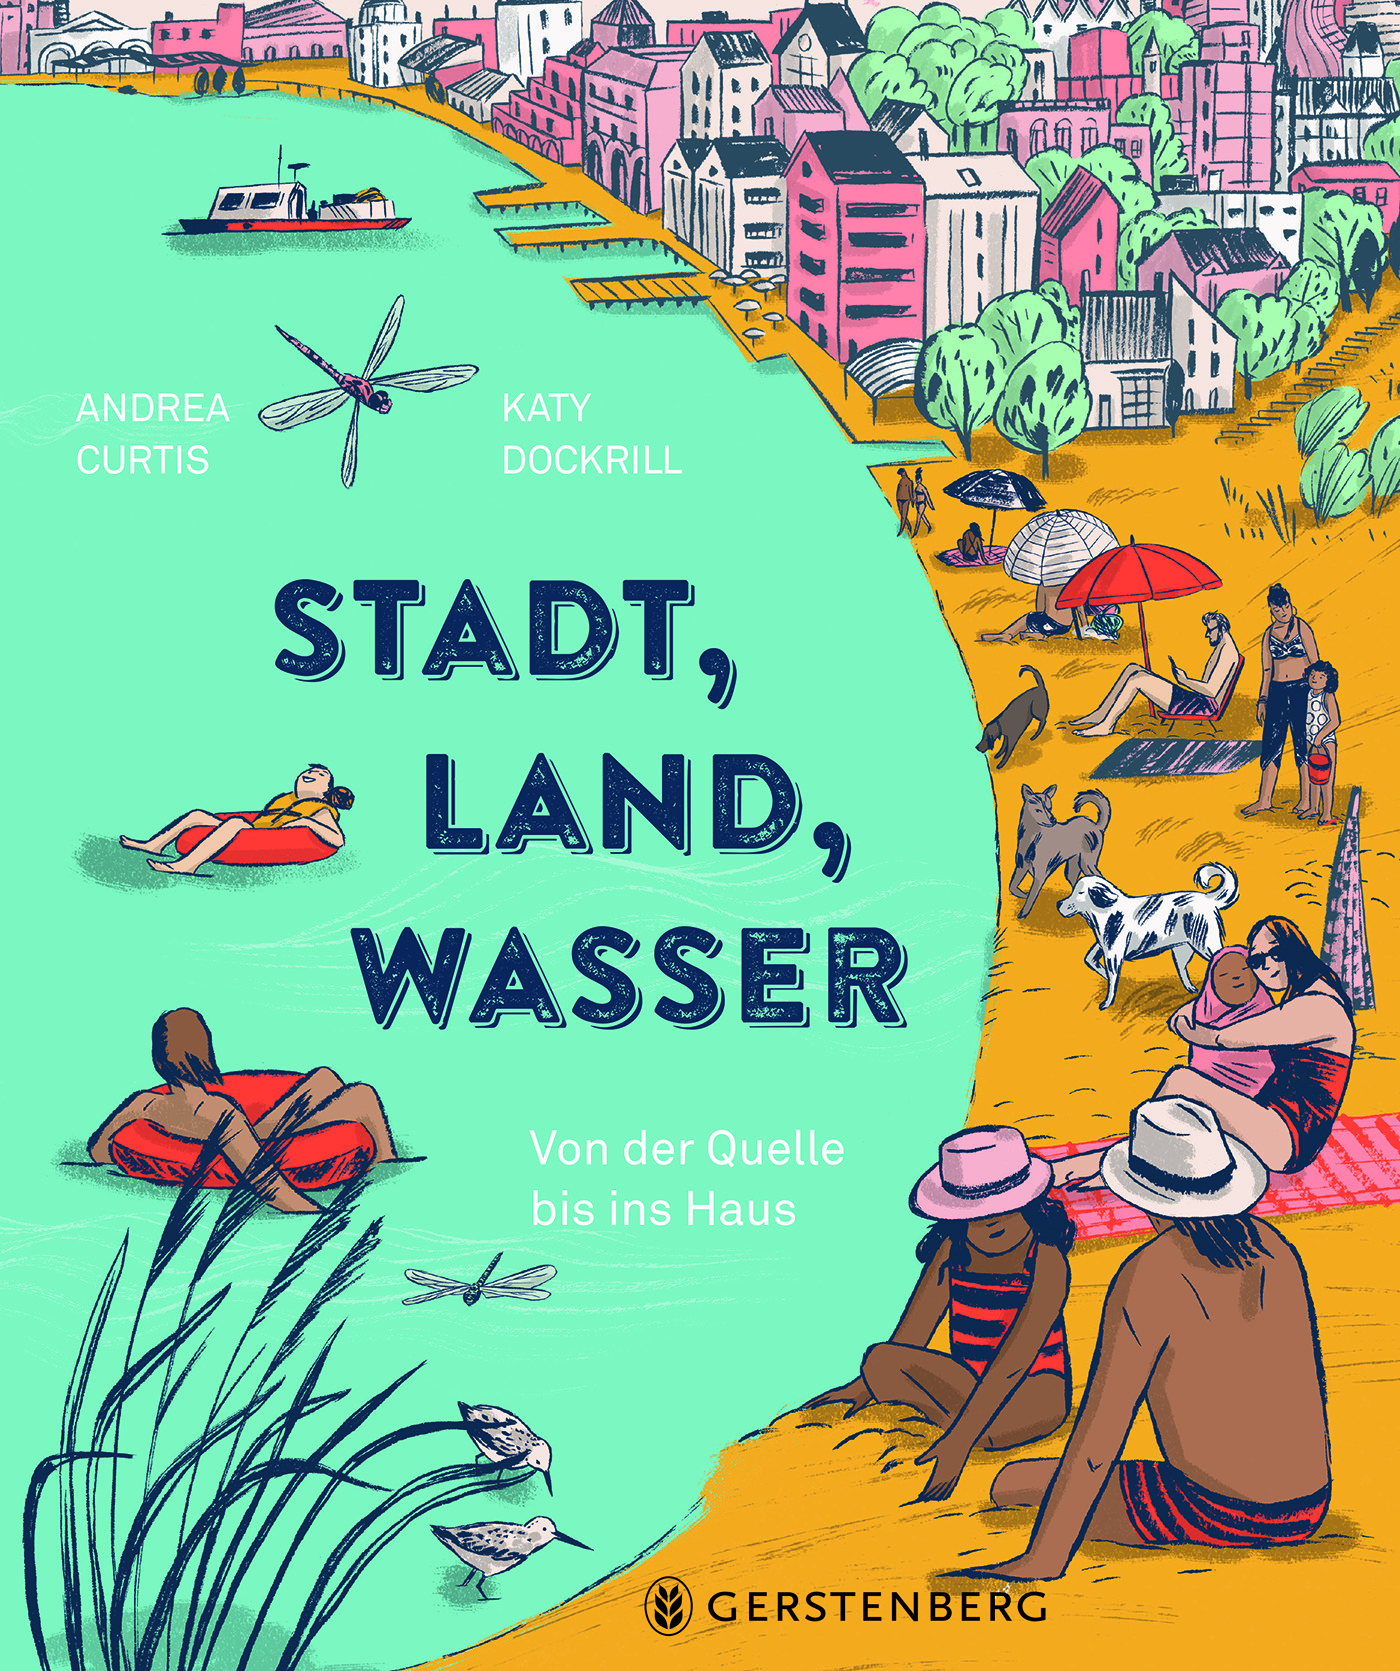 Buchcover "Stadt, Land, Wasser", Gerstenberg 